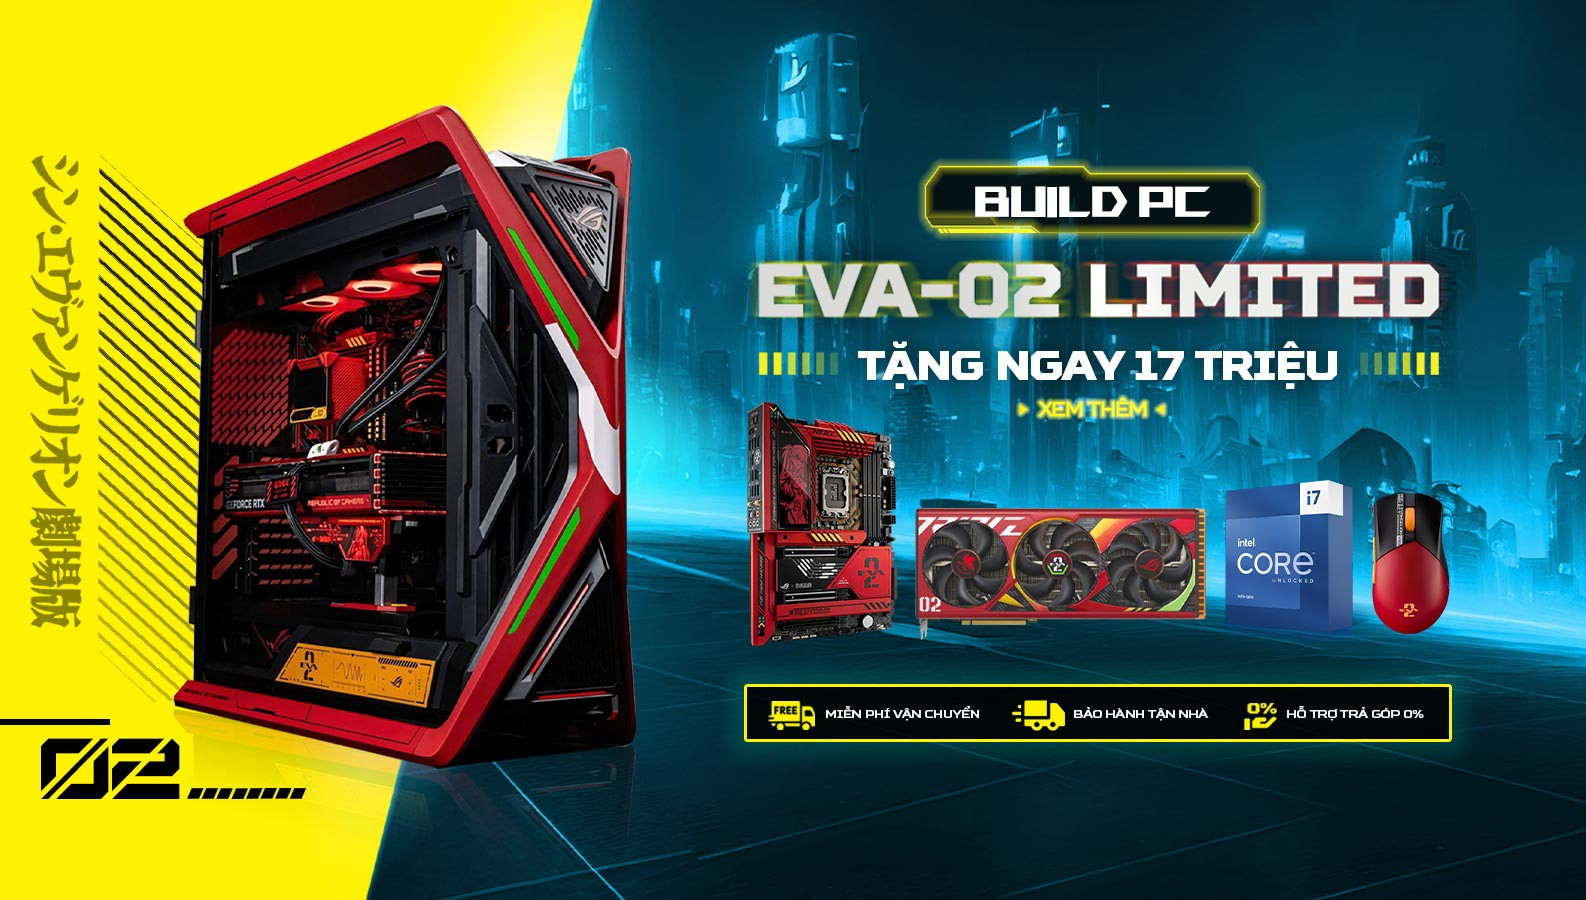 Chương Trình Khuyến Mãi Build PC Eva 02 Limited - Tặng Ngay 17 Triệu